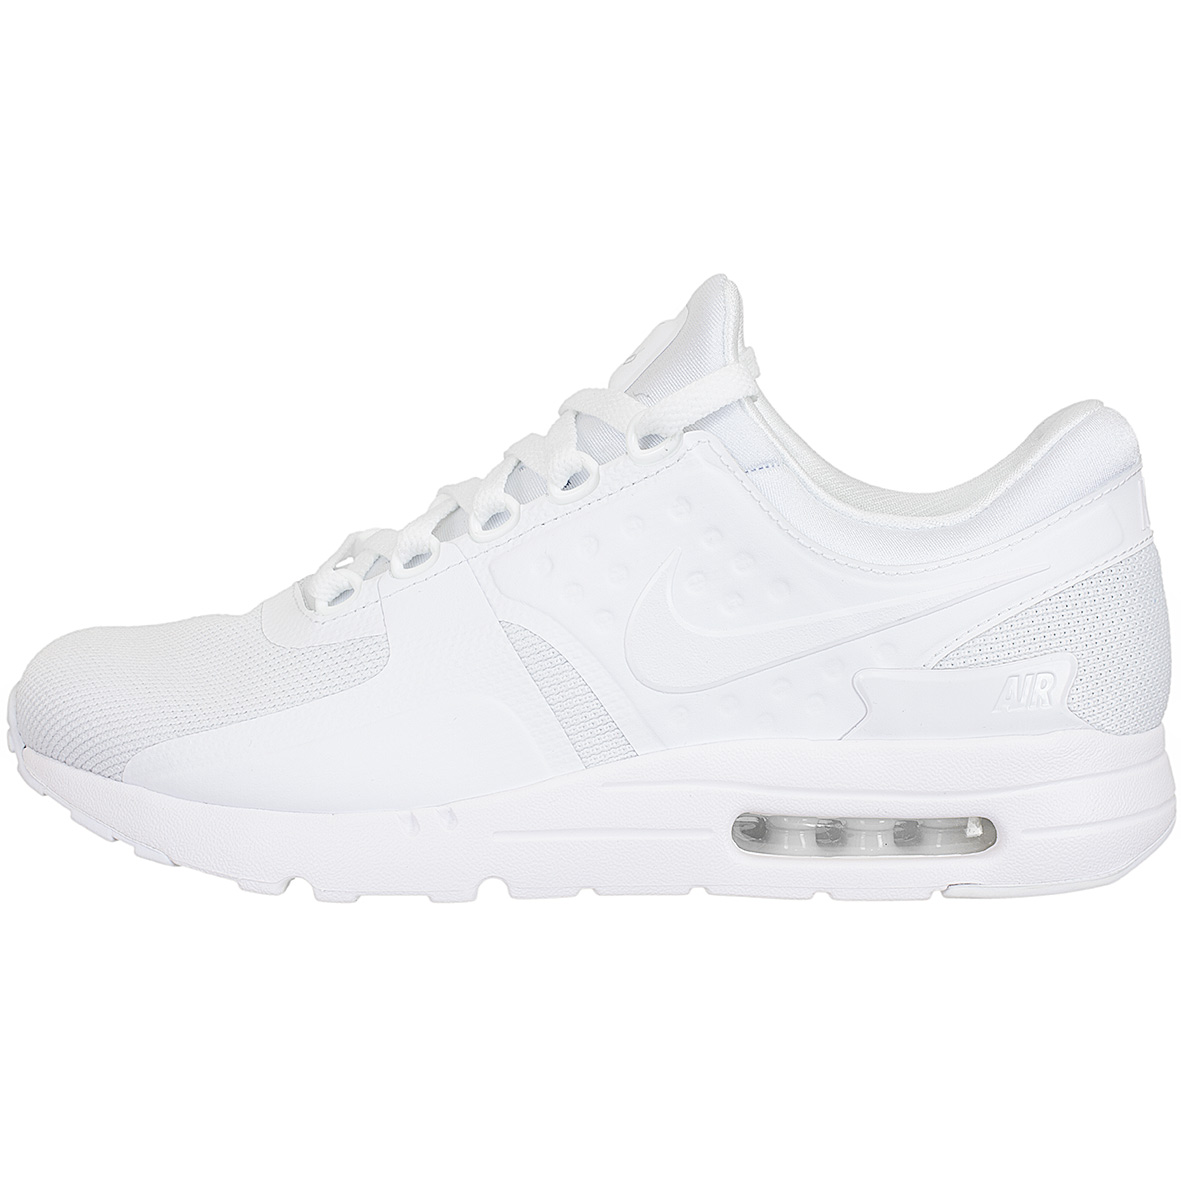 ☆ Nike Sneaker Air Max Zero Essential weiß/weiß - hier bestellen!